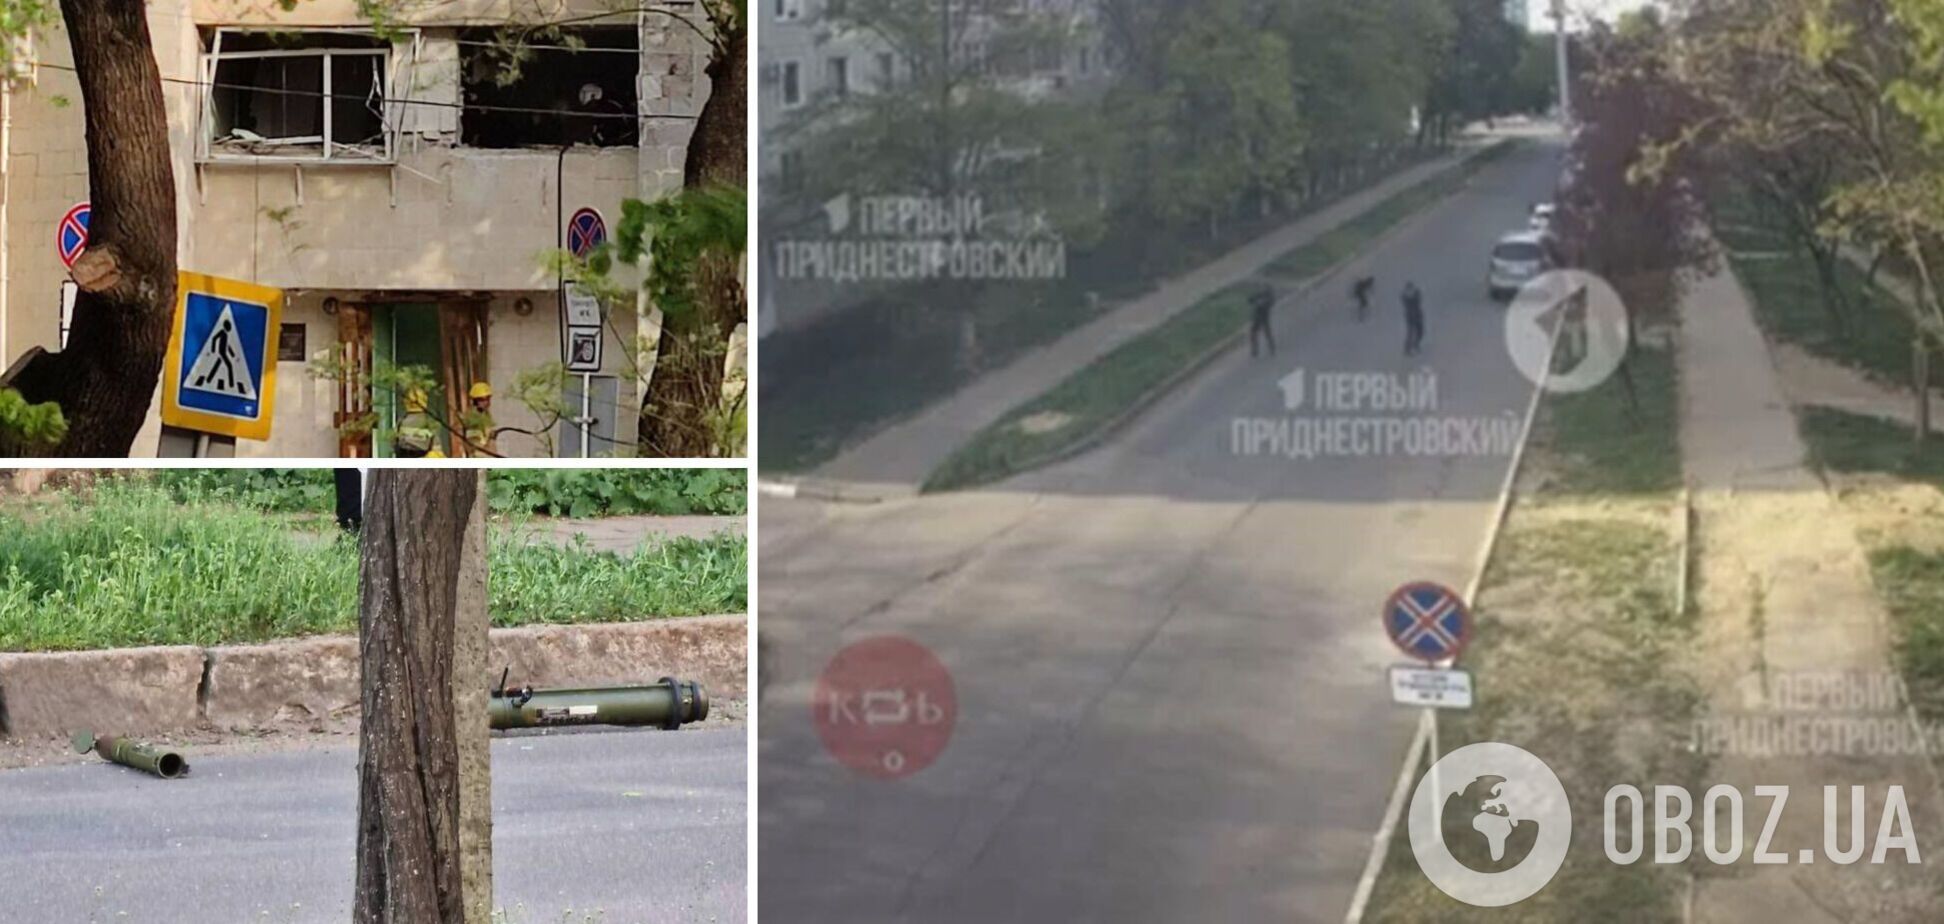 Появились кадры 'нападения' на здание 'МГБ' в Тирасполе. Видео